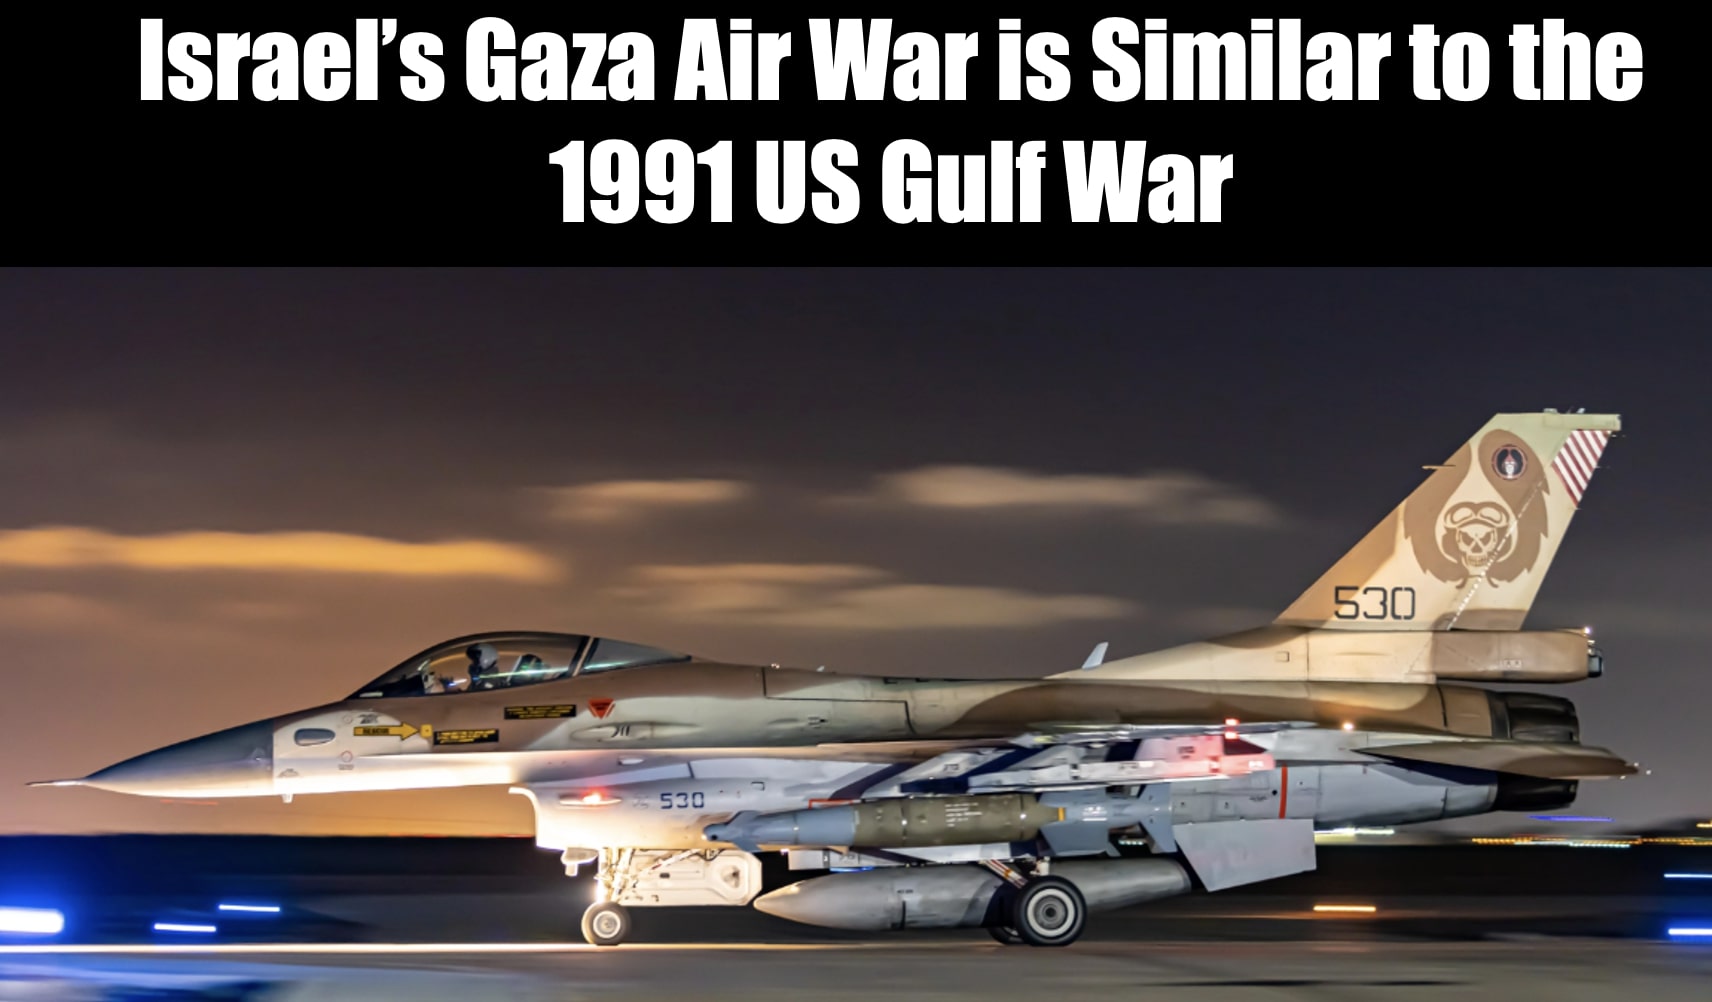 Israel’s Gaza War Compared to the 1991 US Gulf War